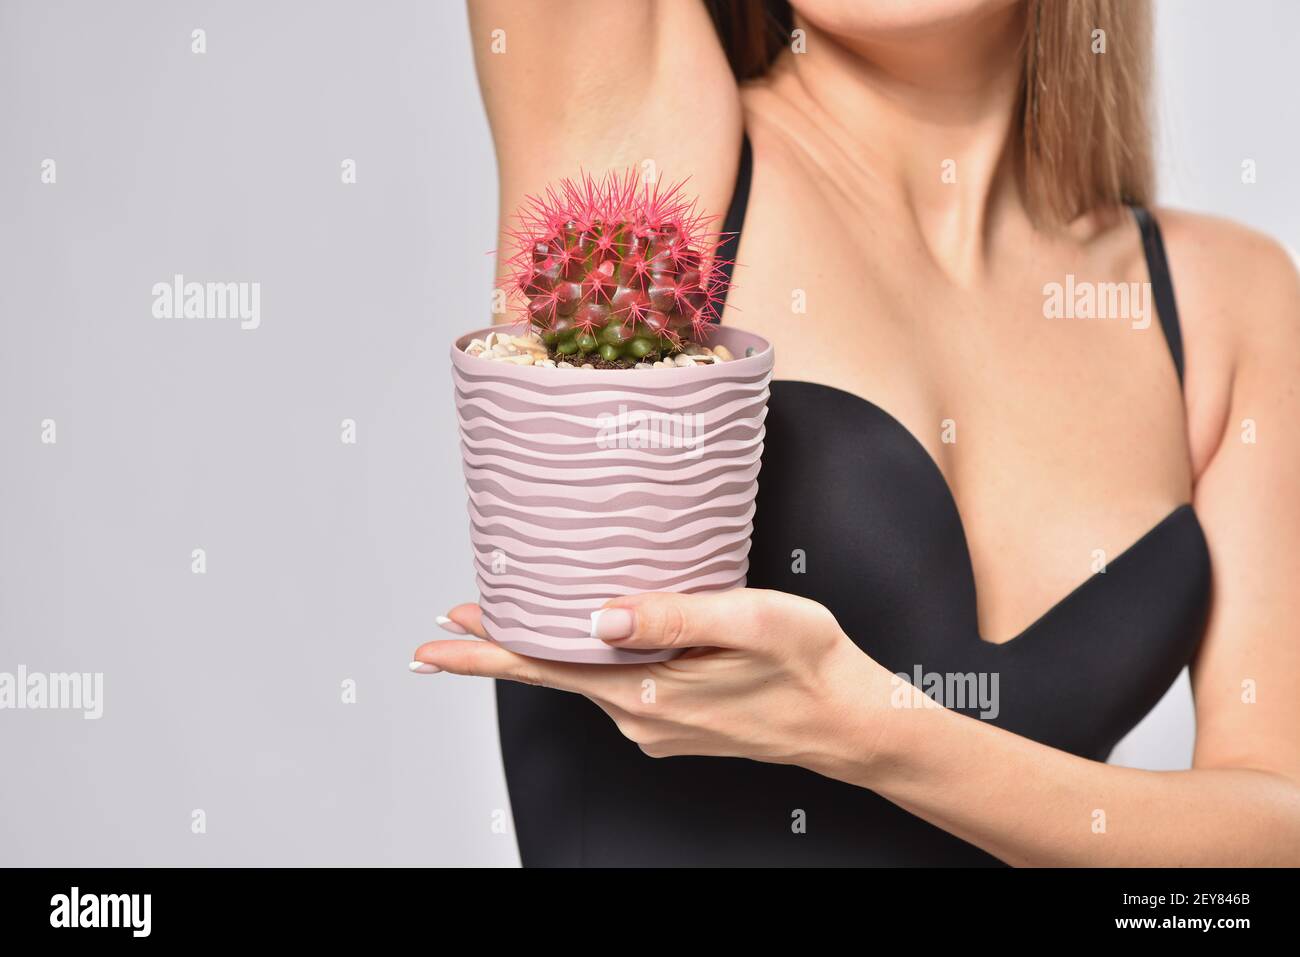 Femme tenant le cactus pickly sous l'aisselle, épilation intime et concept d'hygiène Banque D'Images